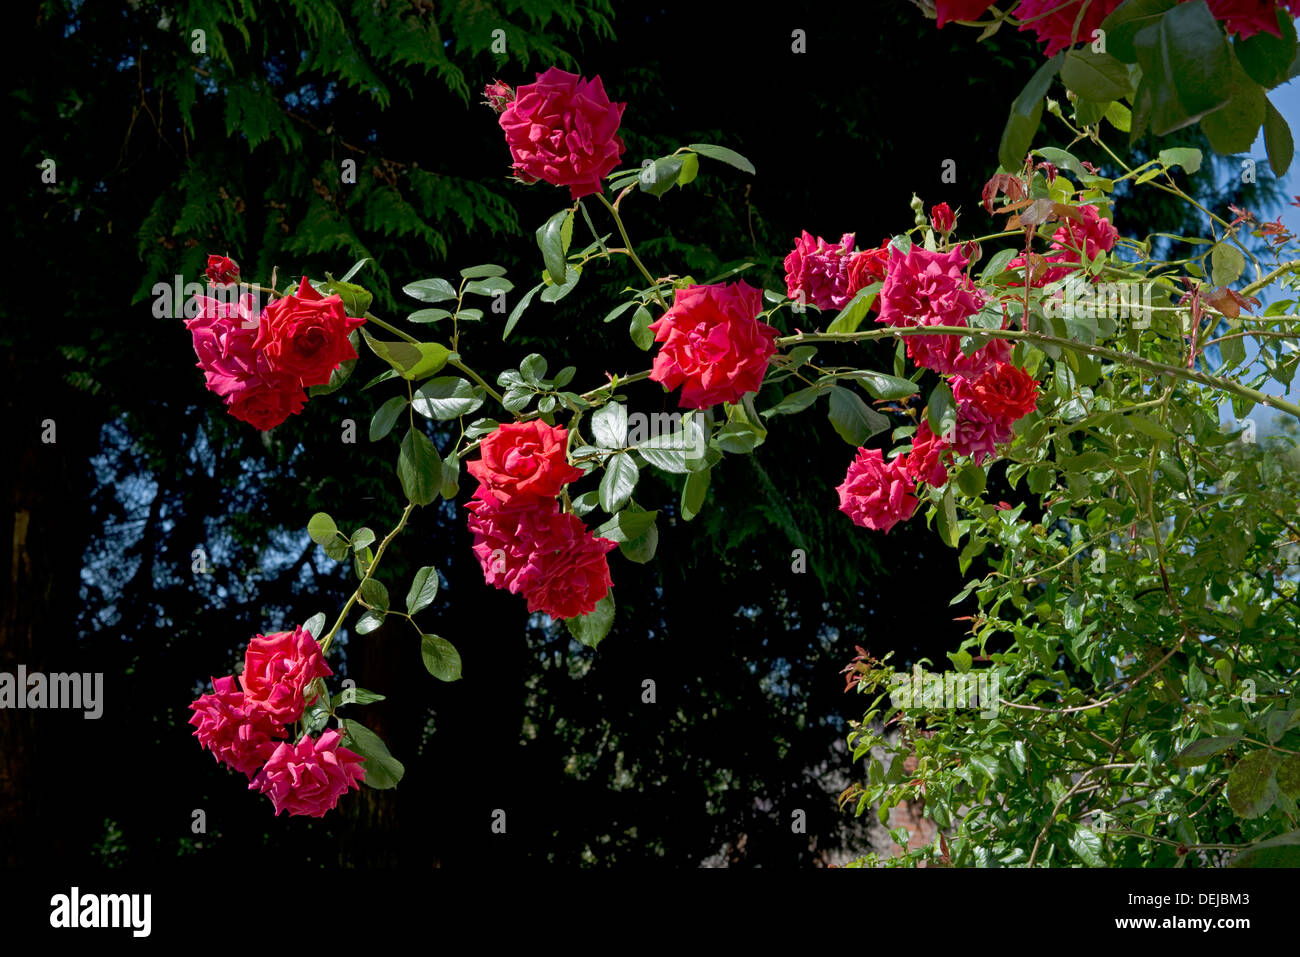 Red fioriture di un rosa rampicante, DANSE DU FEU, Foto Stock